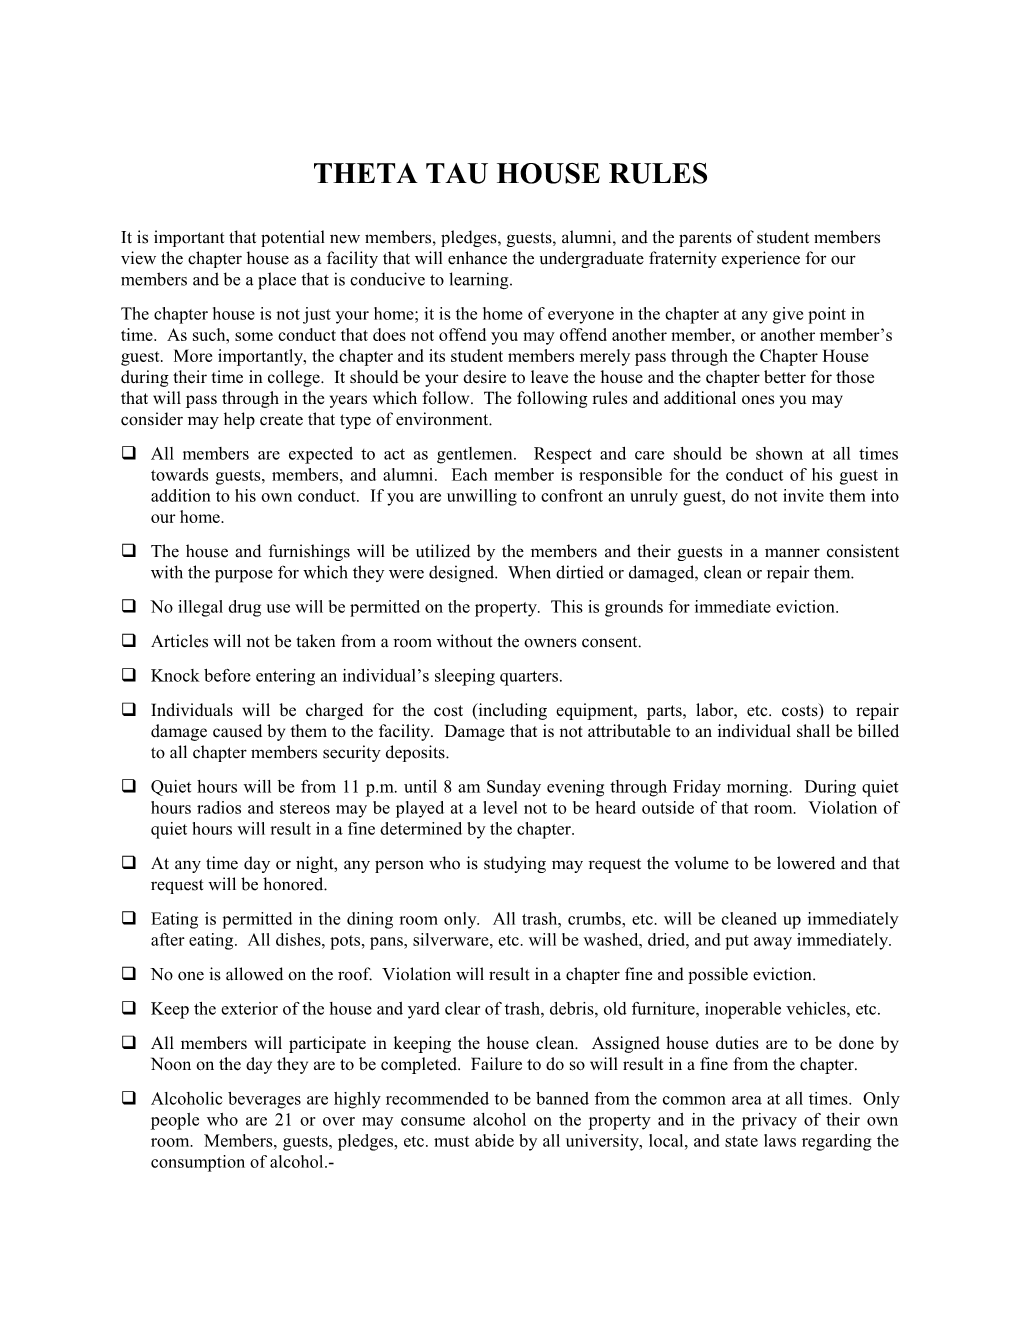 Theta Tau House Rules